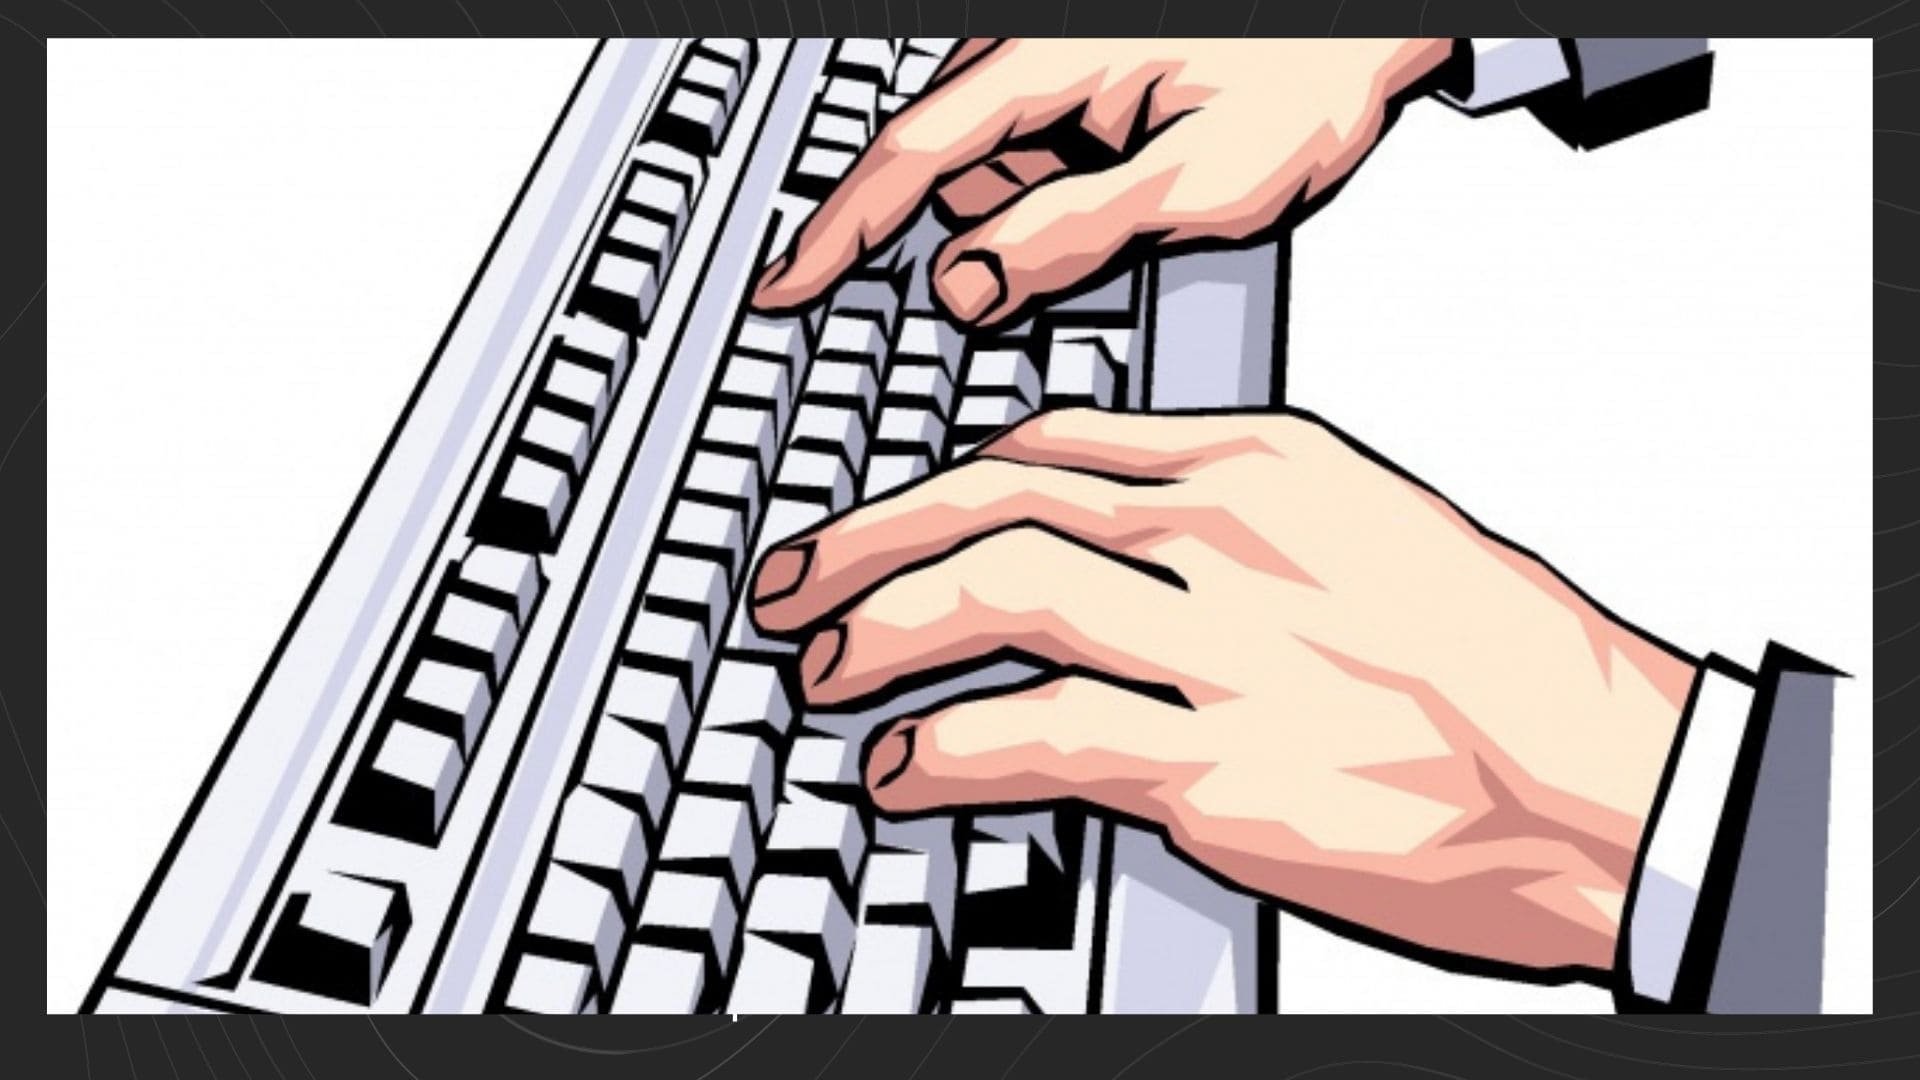 Typing world. Человек печатает. Человек печатает на клавиатуре иллюстрация. Руки печатают на клавиатуре рисунок. Печатающий человек с изображения.